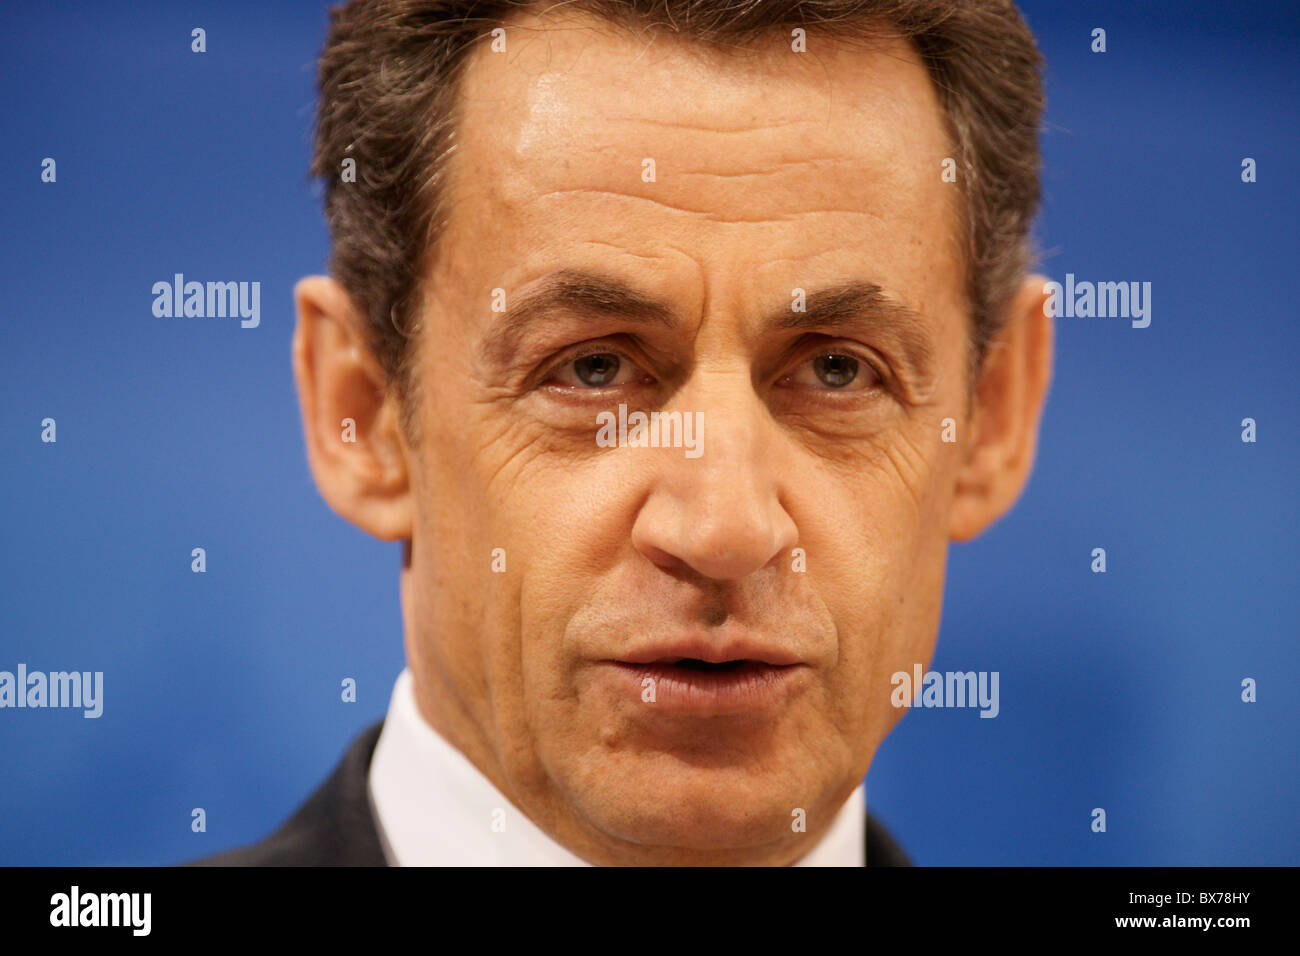 German Chancellor Angela Merkel and French President Nicolas Sarkozy in Freiburg on Friday, 10.12.2010 Stock Photo